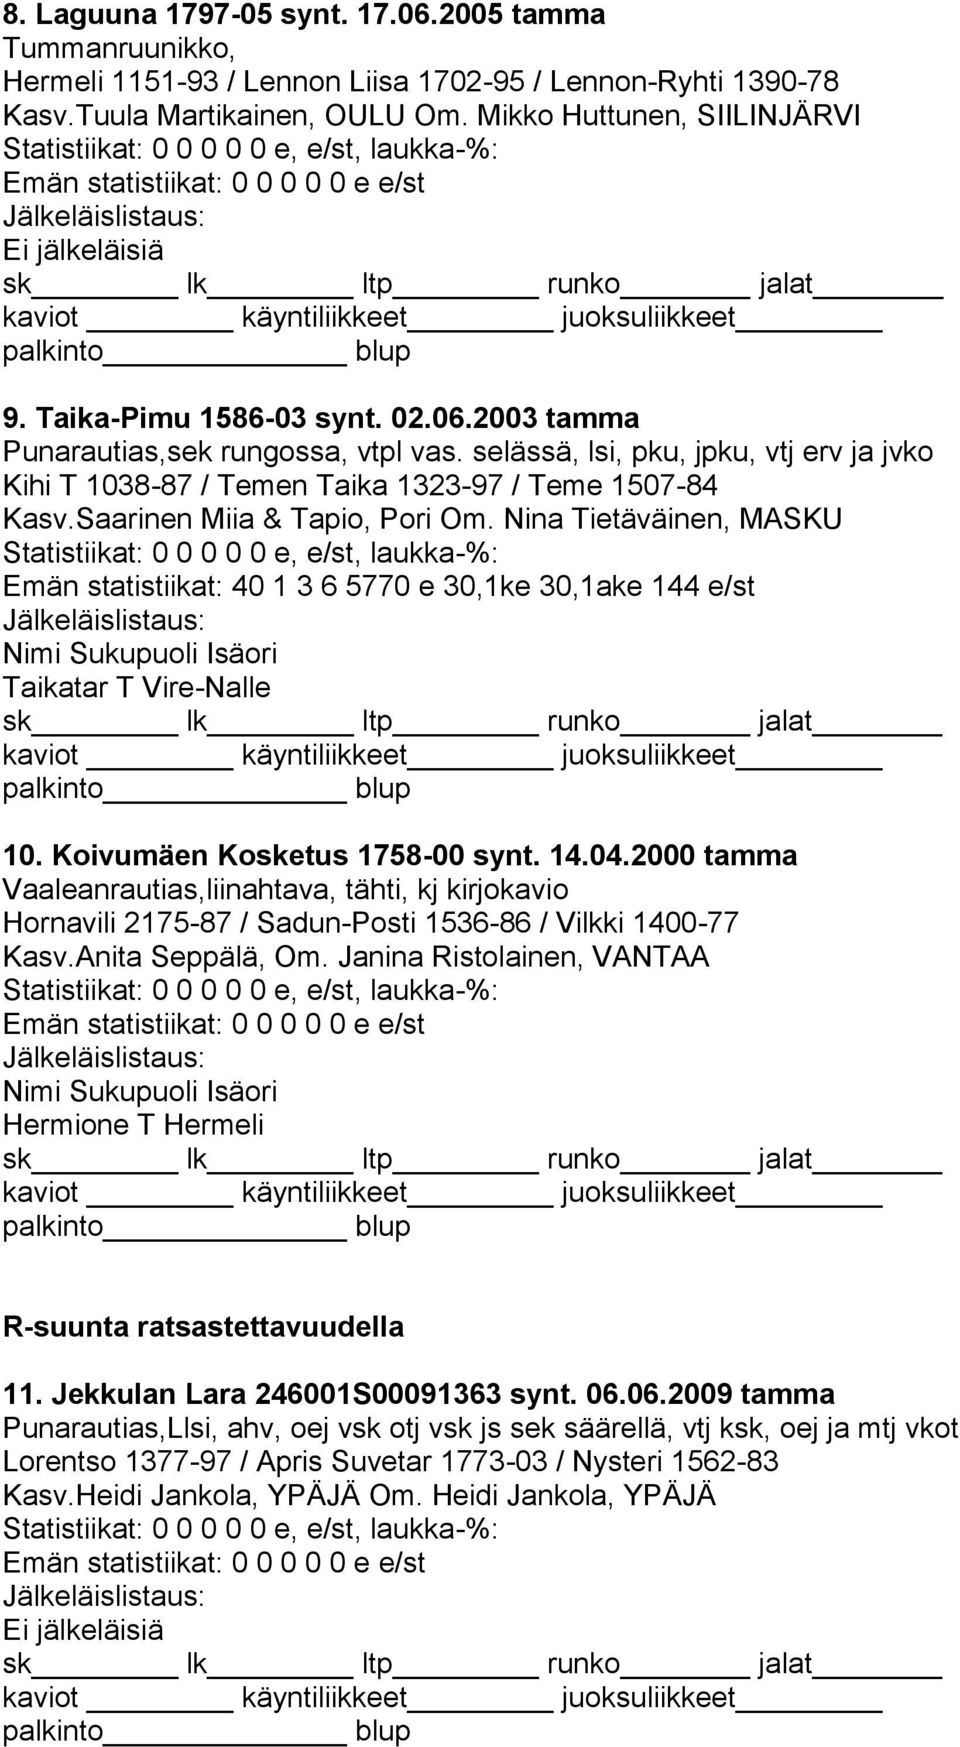 Saarinen Miia & Tapio, Pori Om. Nina Tietäväinen, MASKU Emän statistiikat: 40 1 3 6 5770 e 30,1ke 30,1ake 144 e/st Taikatar T Vire-Nalle 10. Koivumäen Kosketus 1758-00 synt. 14.04.